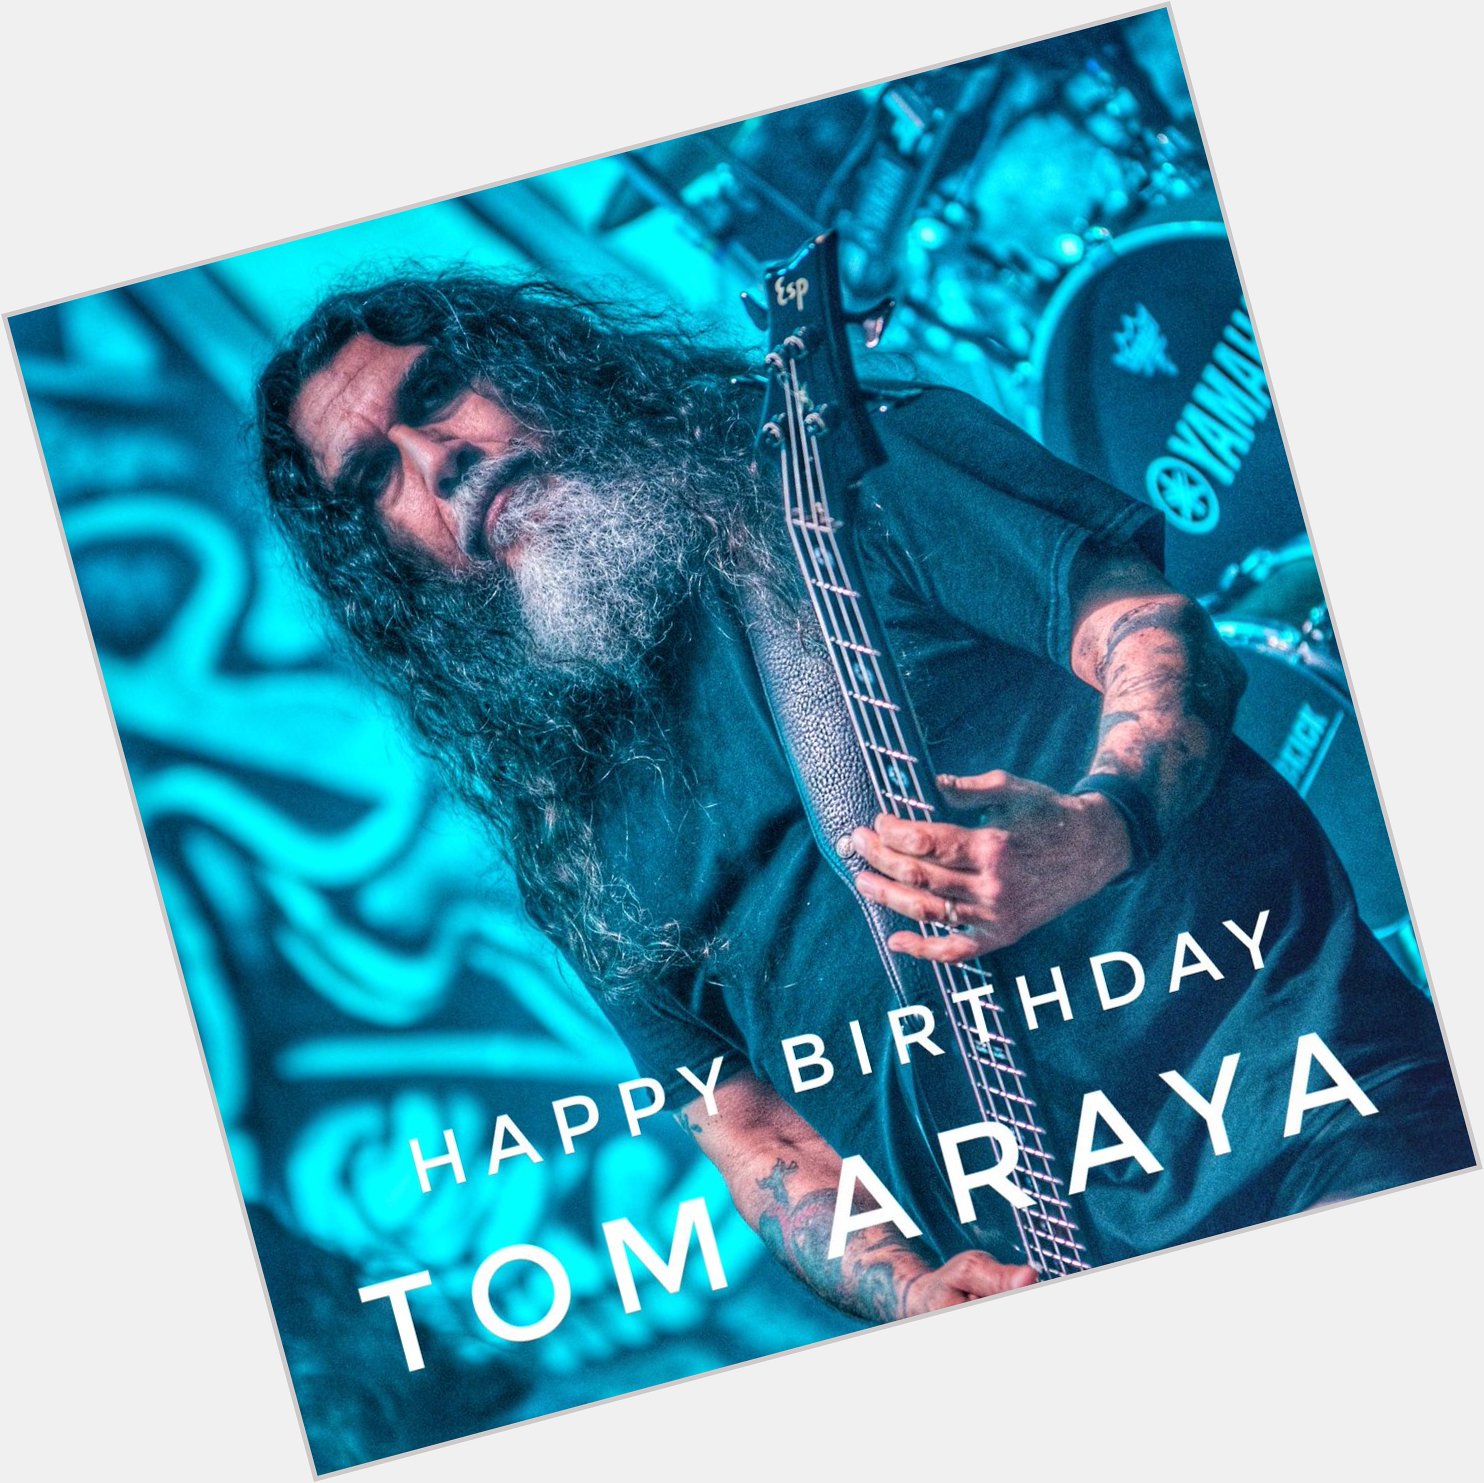 Happy birthday to Tom Araya of Slayer. 